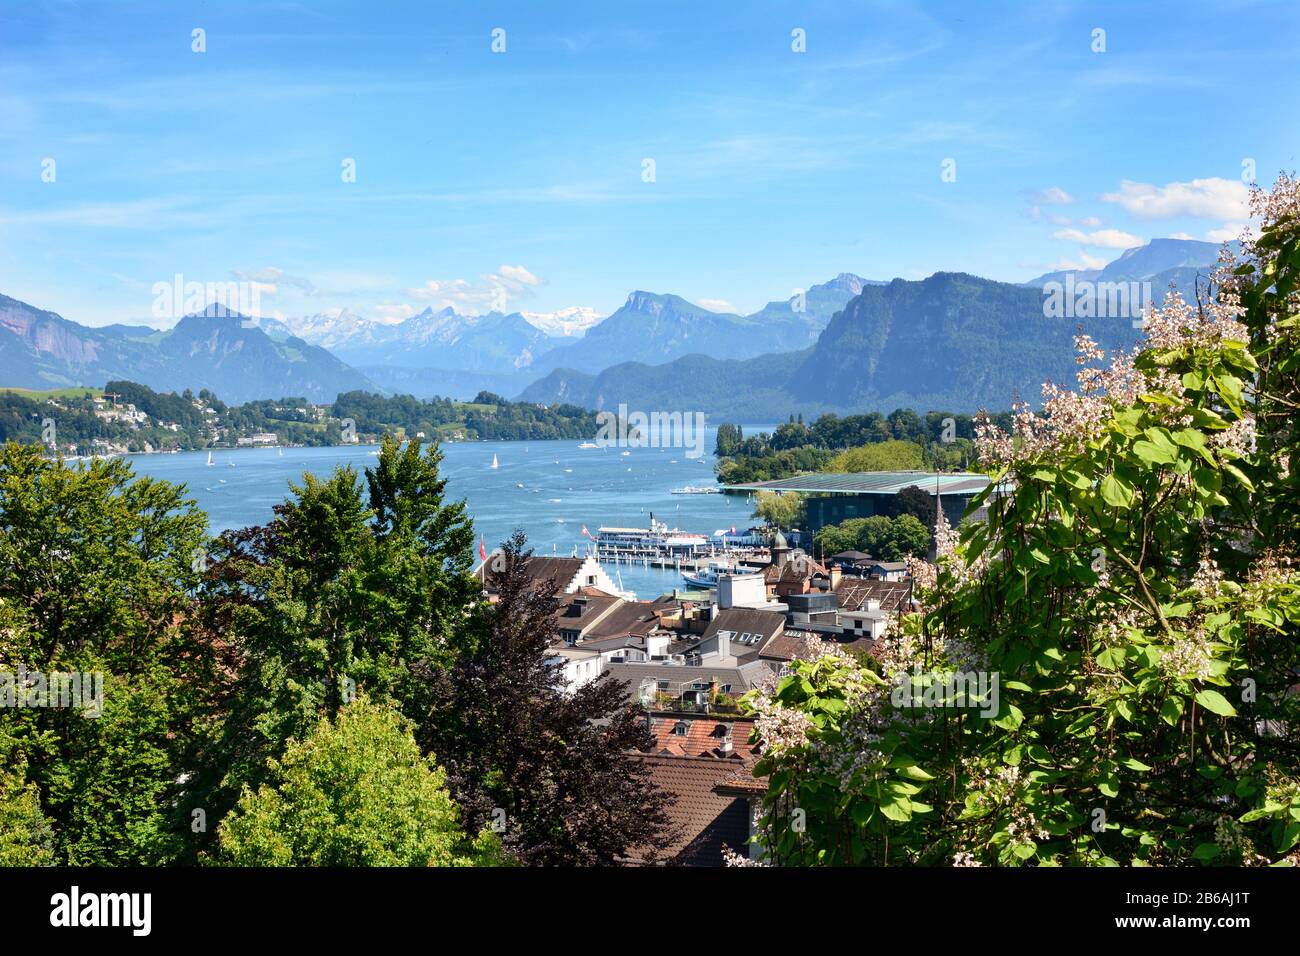 Luzerner, SCHWEIZ - 3. JULI 2014: Übersicht über Luzerner Stadt, See und Alpen. Von der Musegg-Mauer aus haben Sie einen atemberaubenden Blick auf die Stadt und den See, a Stockfoto